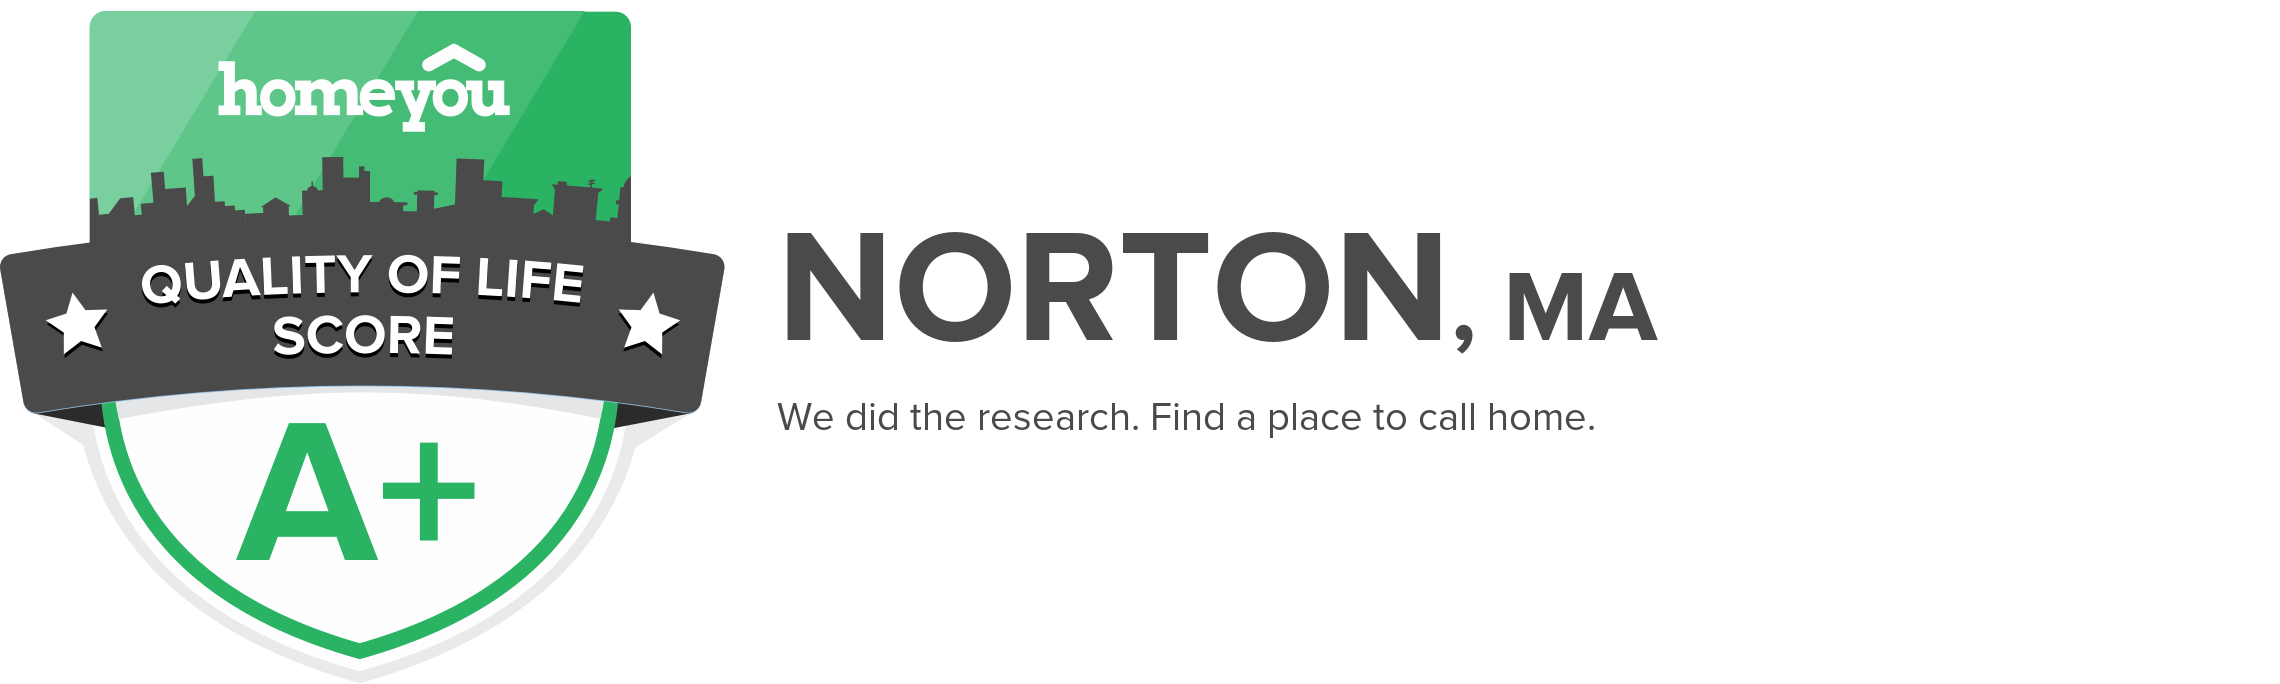 Norton, MA